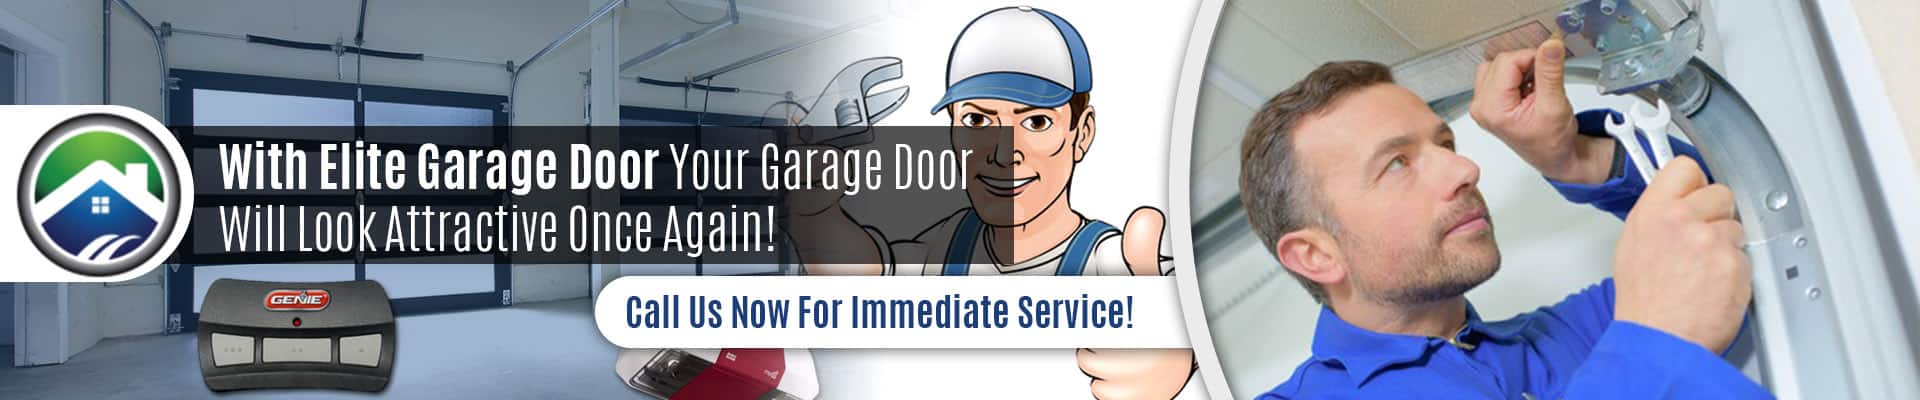 Garage Door Opener Repair Lynnwood - Elite Garage Door Of Lynnwood